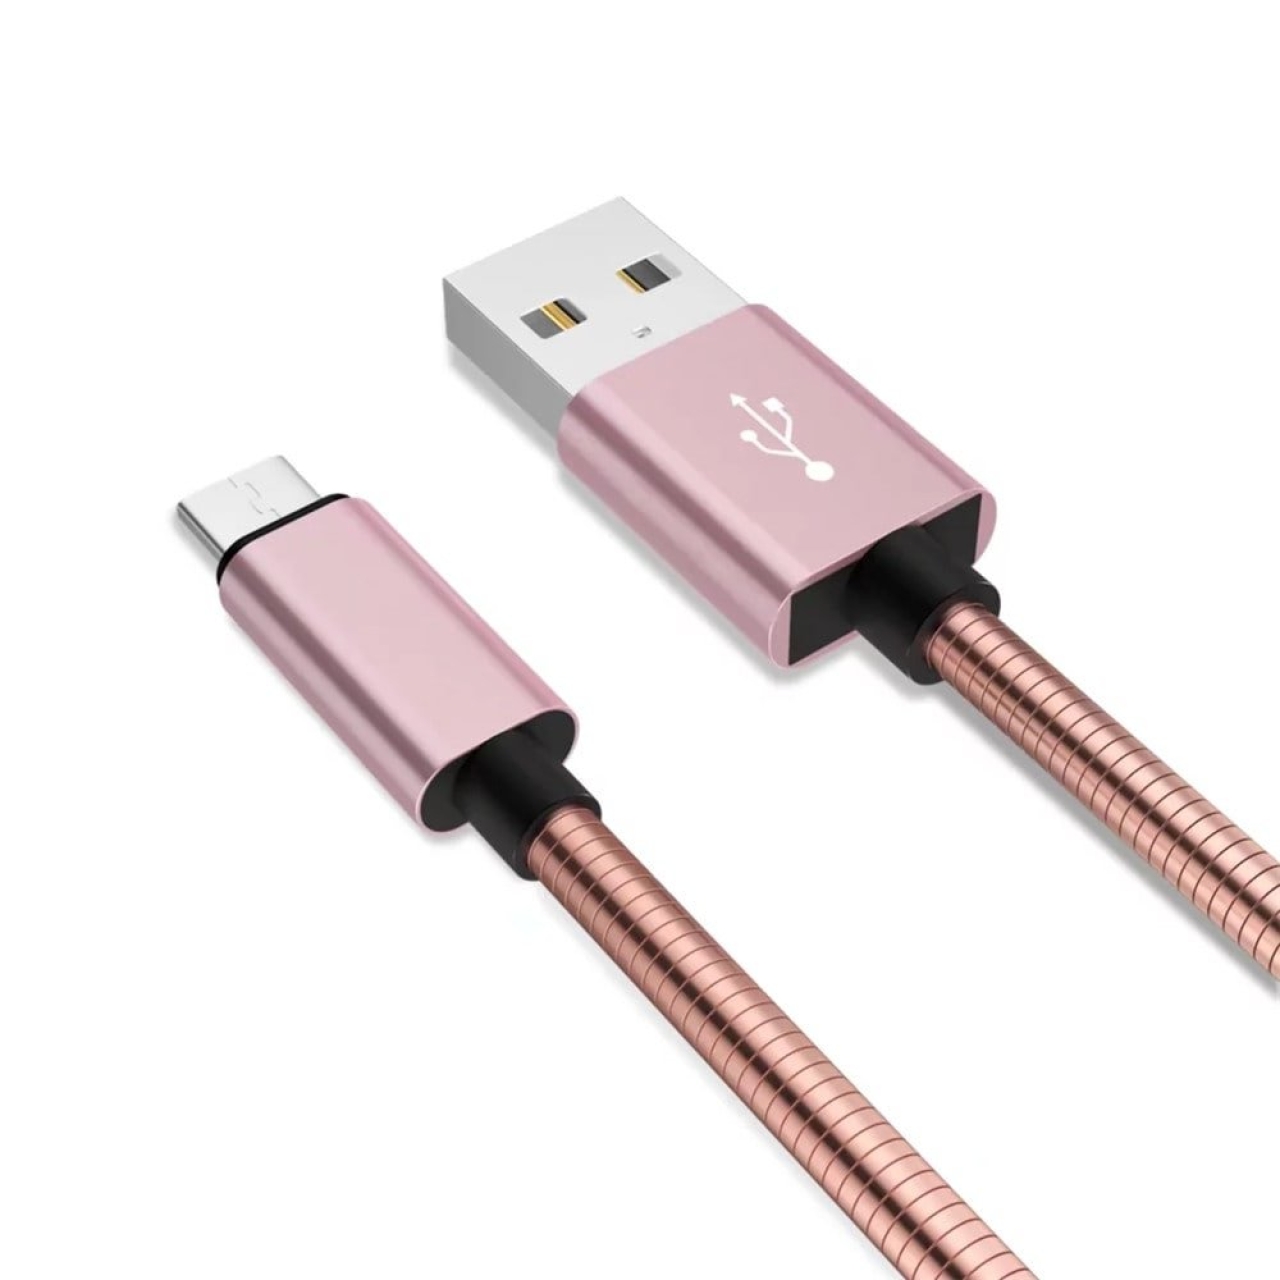 کابل تبدیل USB به MicroUSB دینیک مدل C350 تمام فلزی طول 1 متر